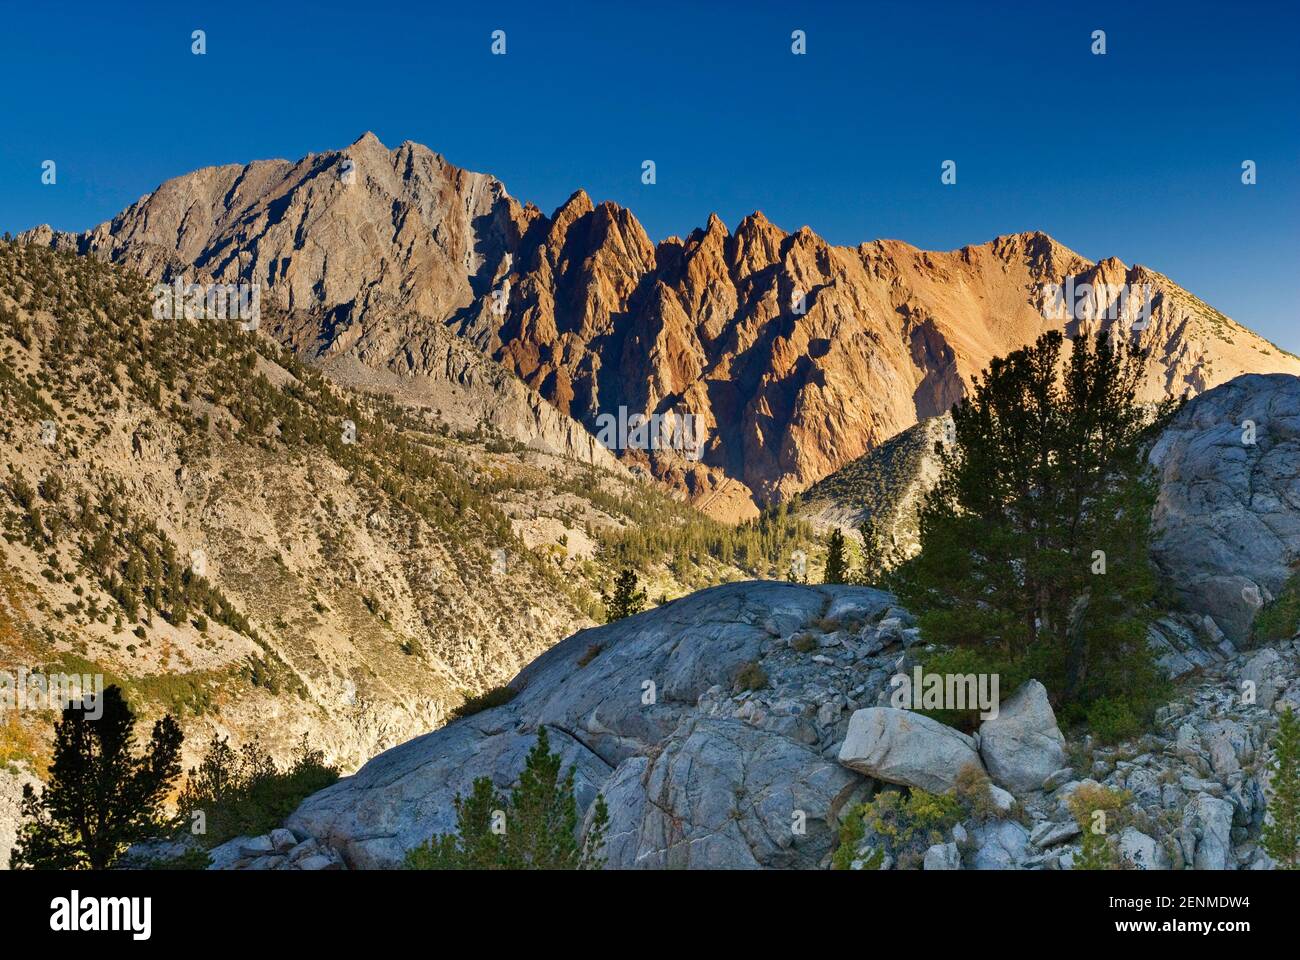 Mont Emerson et Piute Crags, vu de Blue Lake dans la région de l'Est, Bassin Sabrina Sierra Nevada, John Muir Wilderness, California, USA Banque D'Images